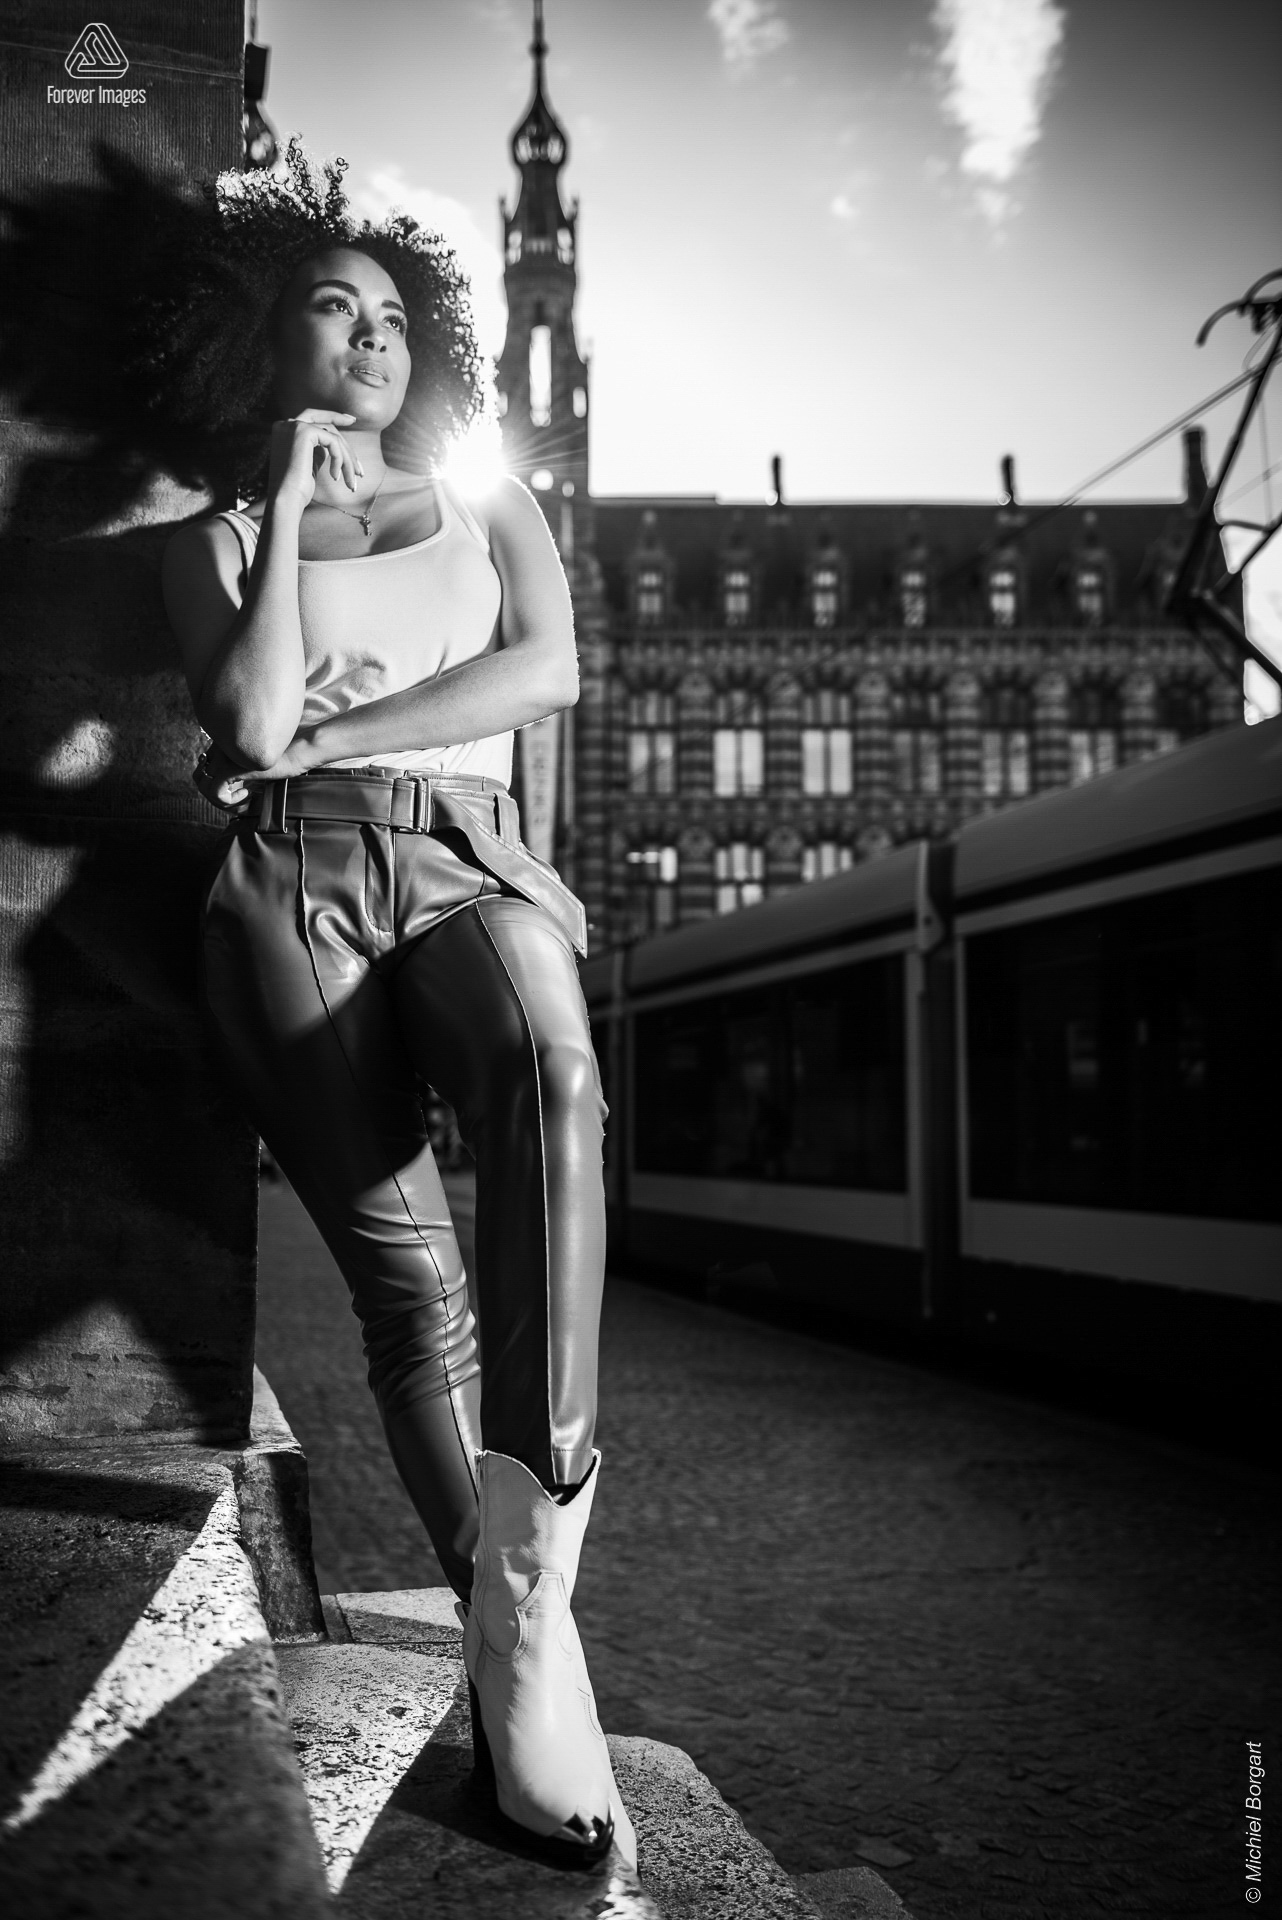 Portretfoto zwart-wit Blending Eras | Channah Hewitt De Dam Amsterdam Magna Plaza | Portretfotograaf Michiel Borgart - Forever Images.